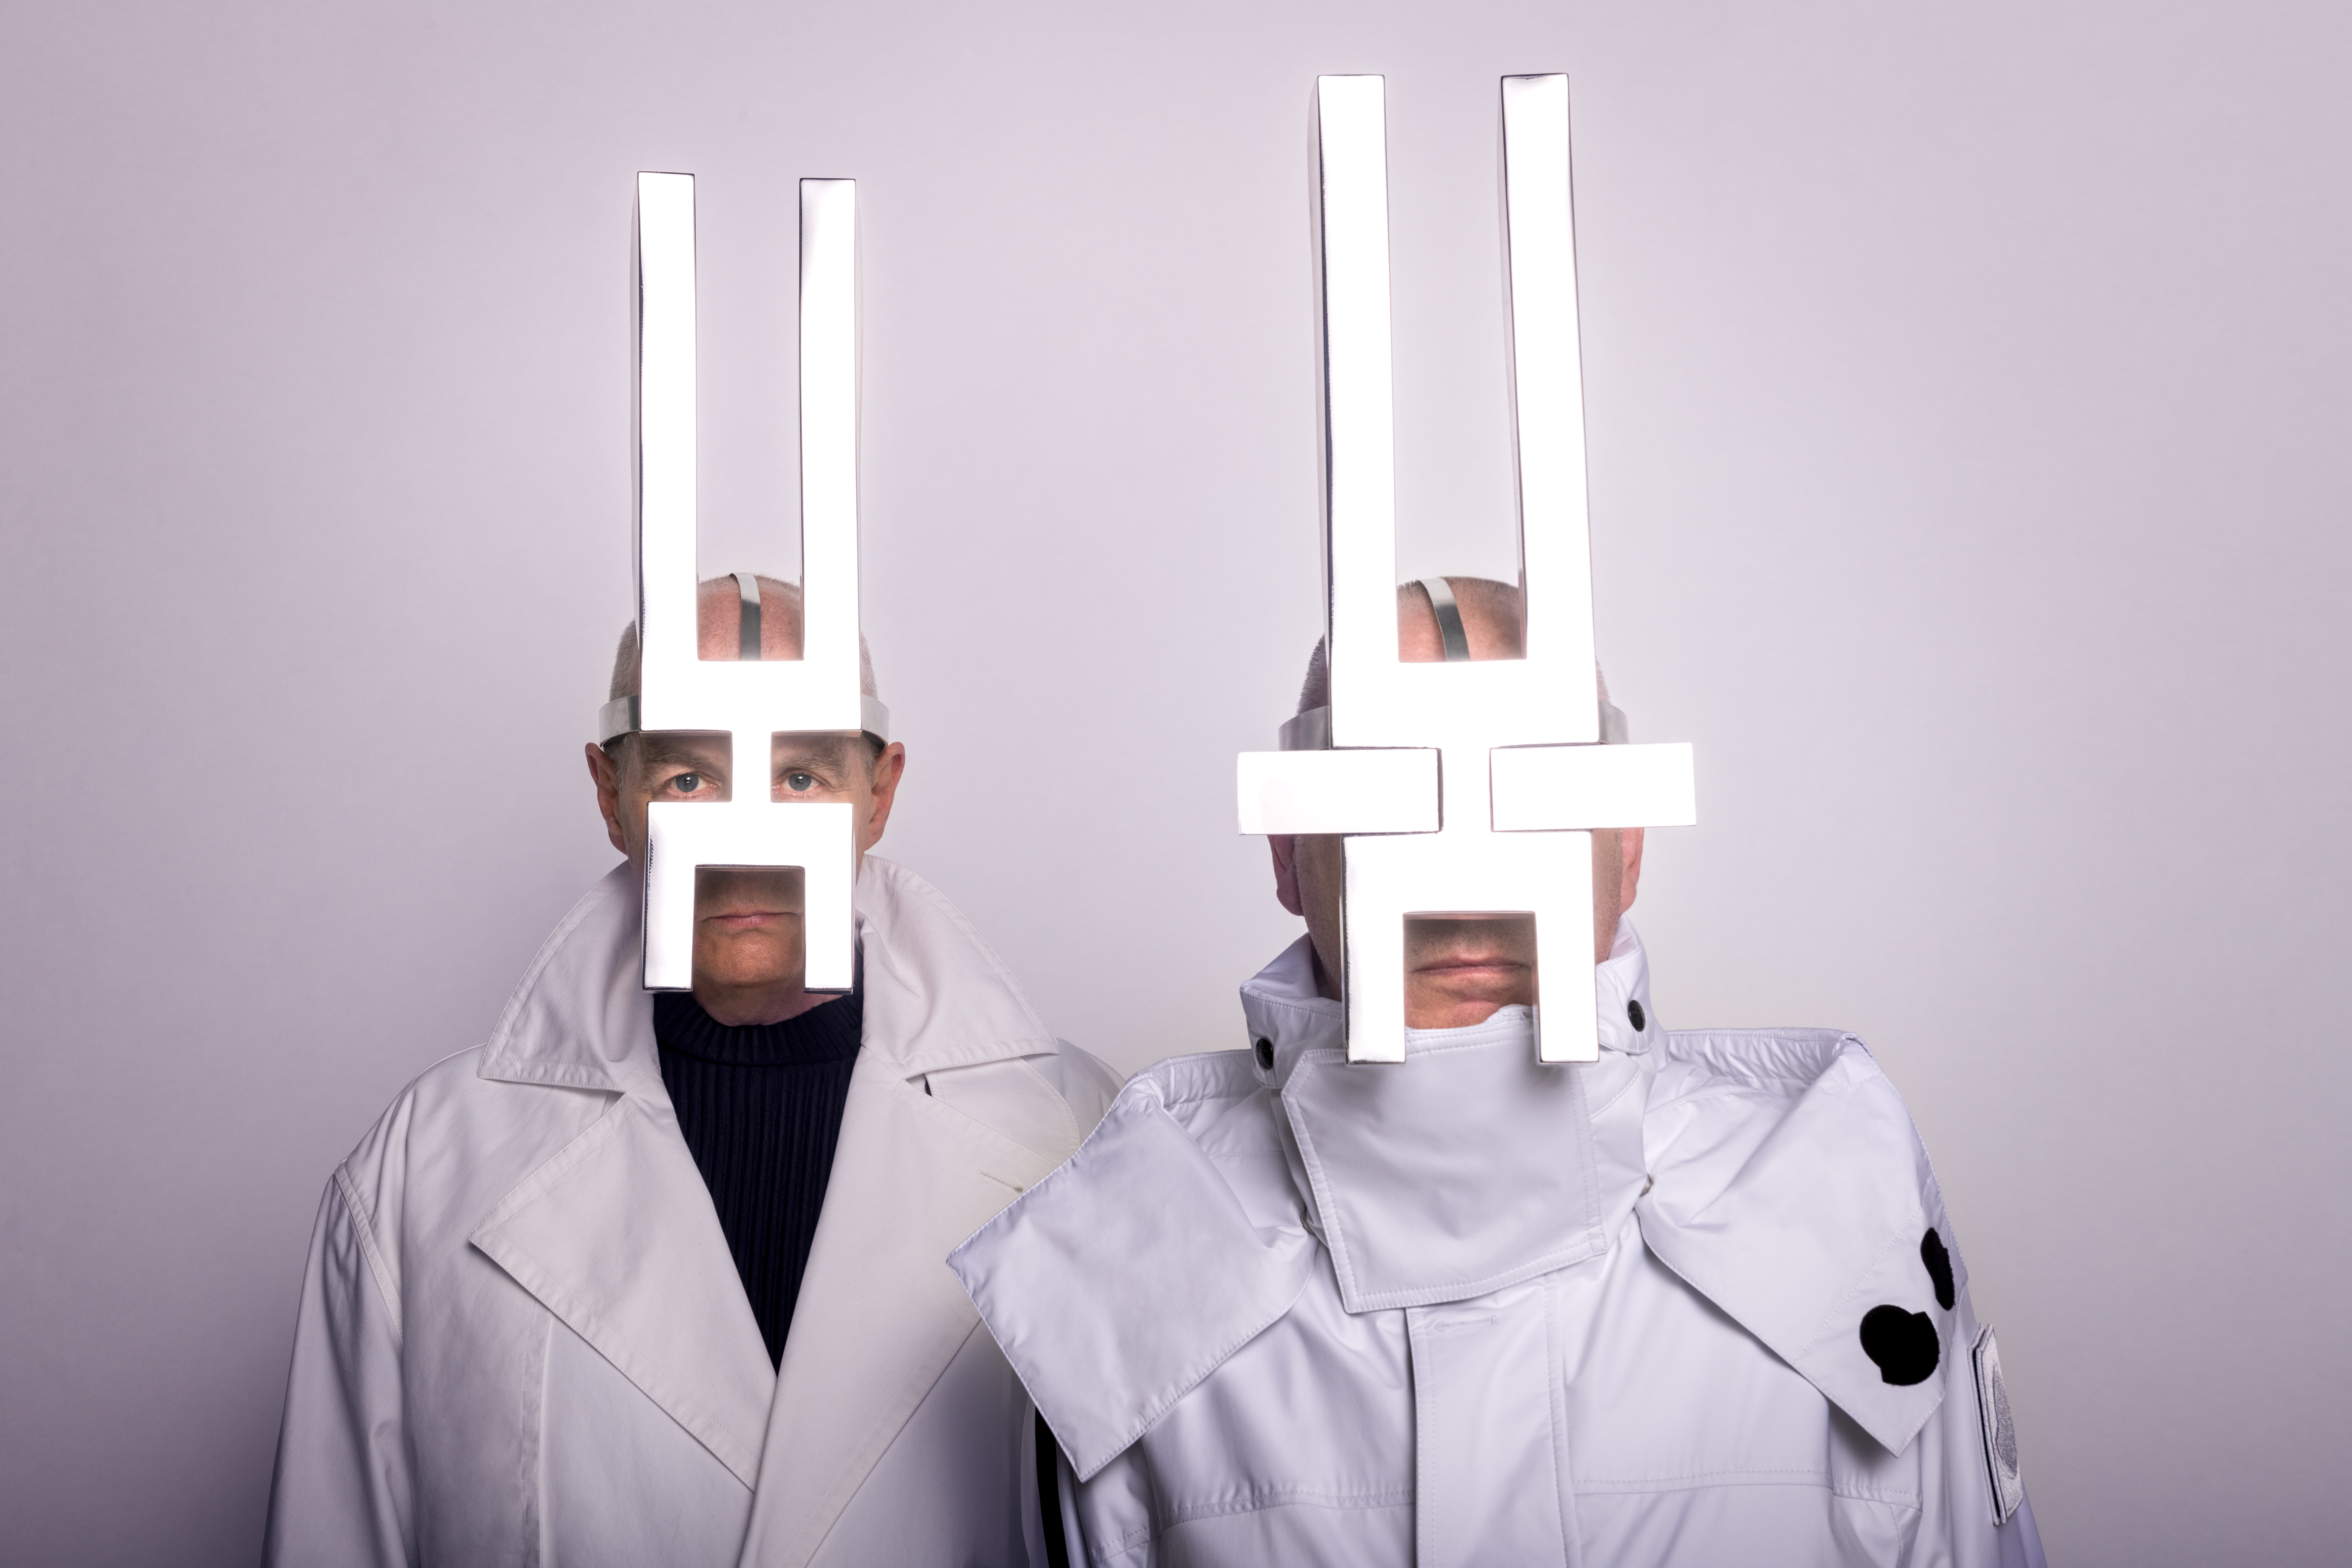 Pet Shop Boys: “El pop actual se ha vuelto narcisista y poco interesante”